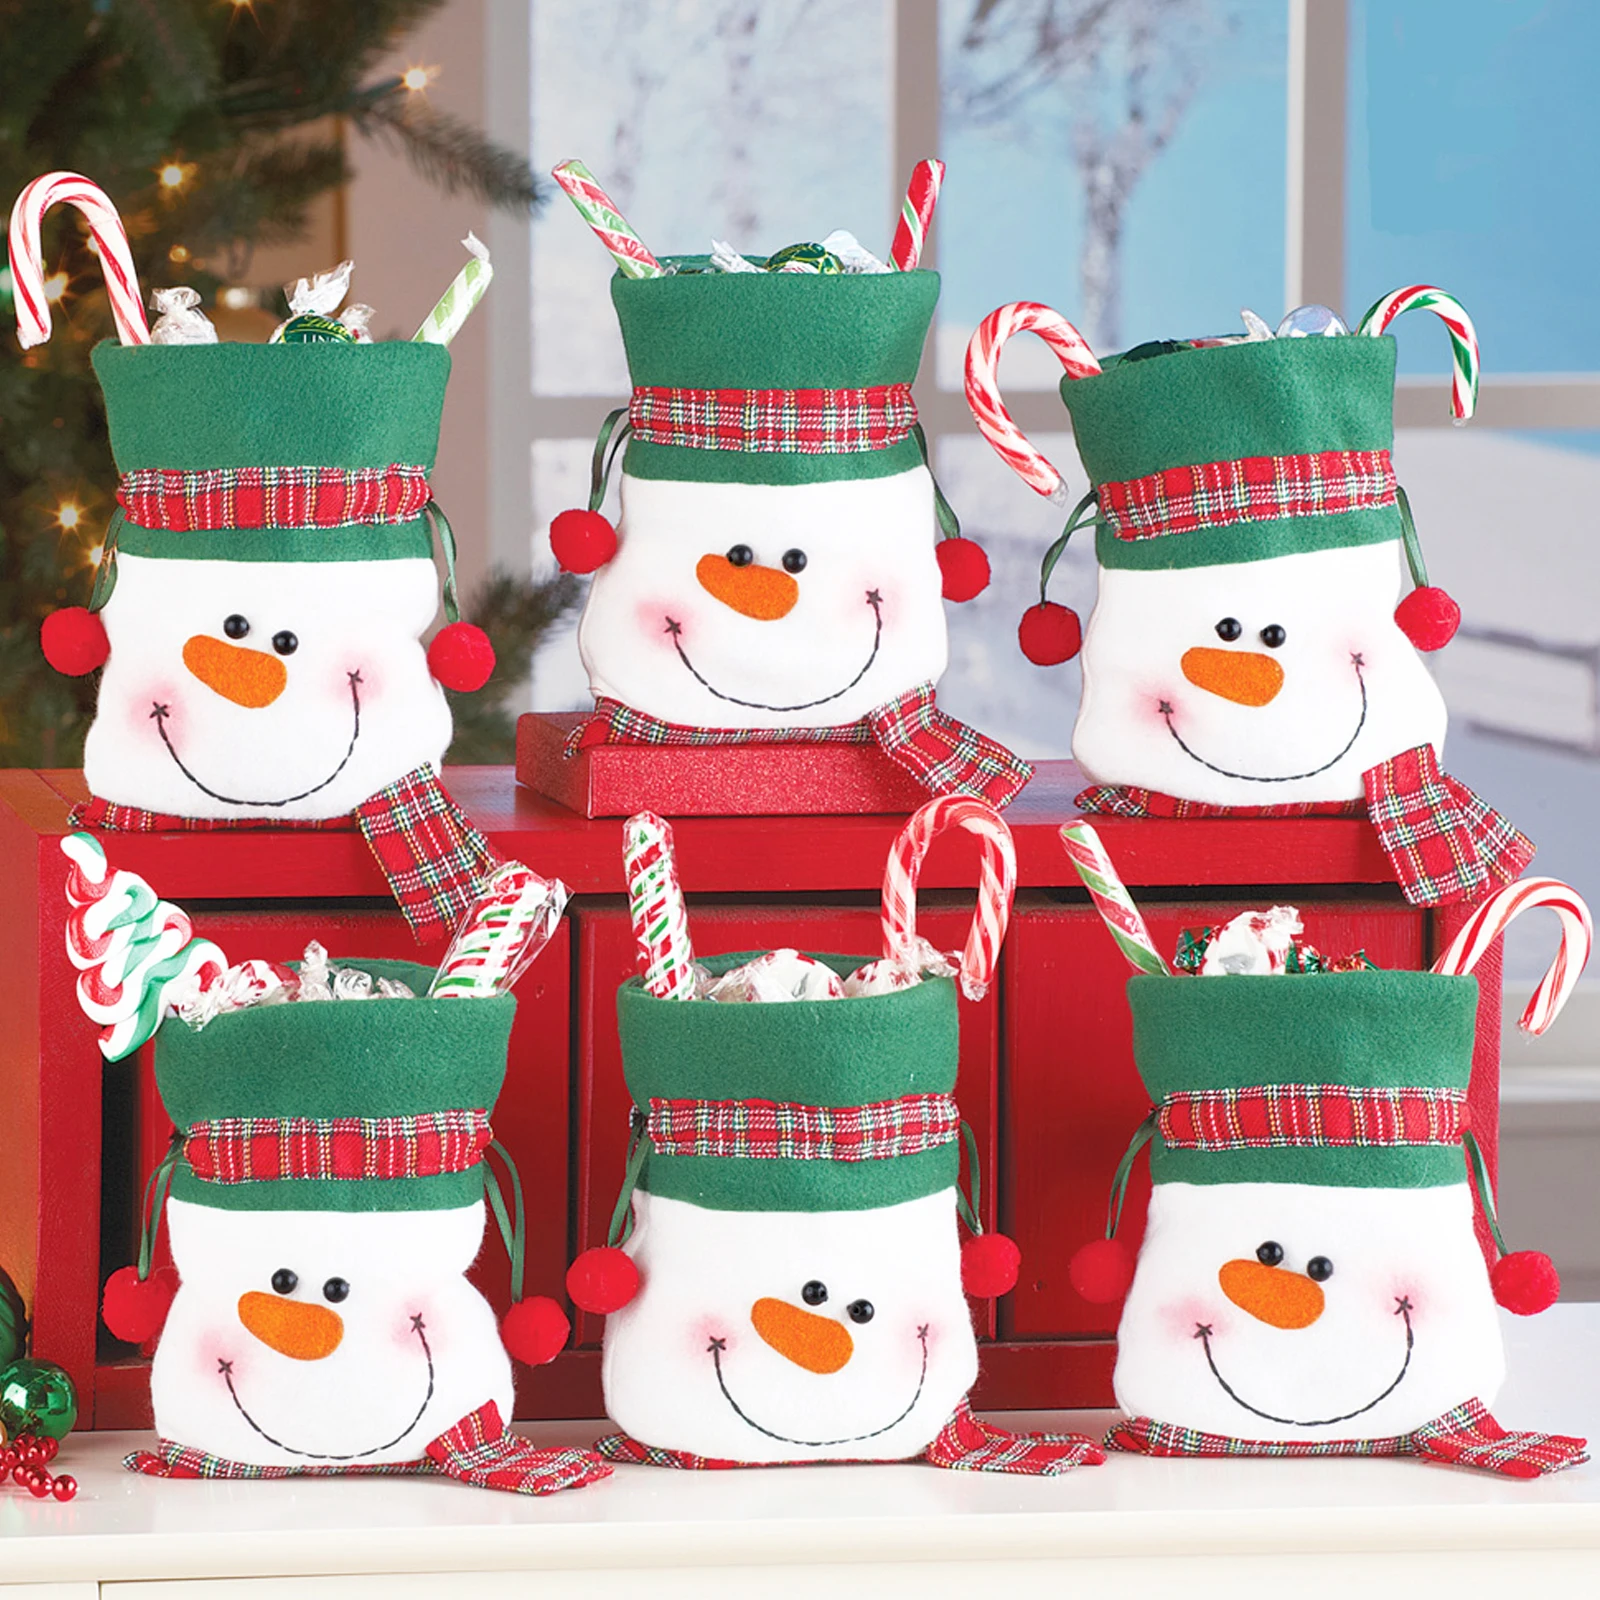 

25x1 6 см рождественские подарочные пакеты, снеговик, пакет конфет, рождественские товары, Детские праздники, рождевечерние украшения, постав...